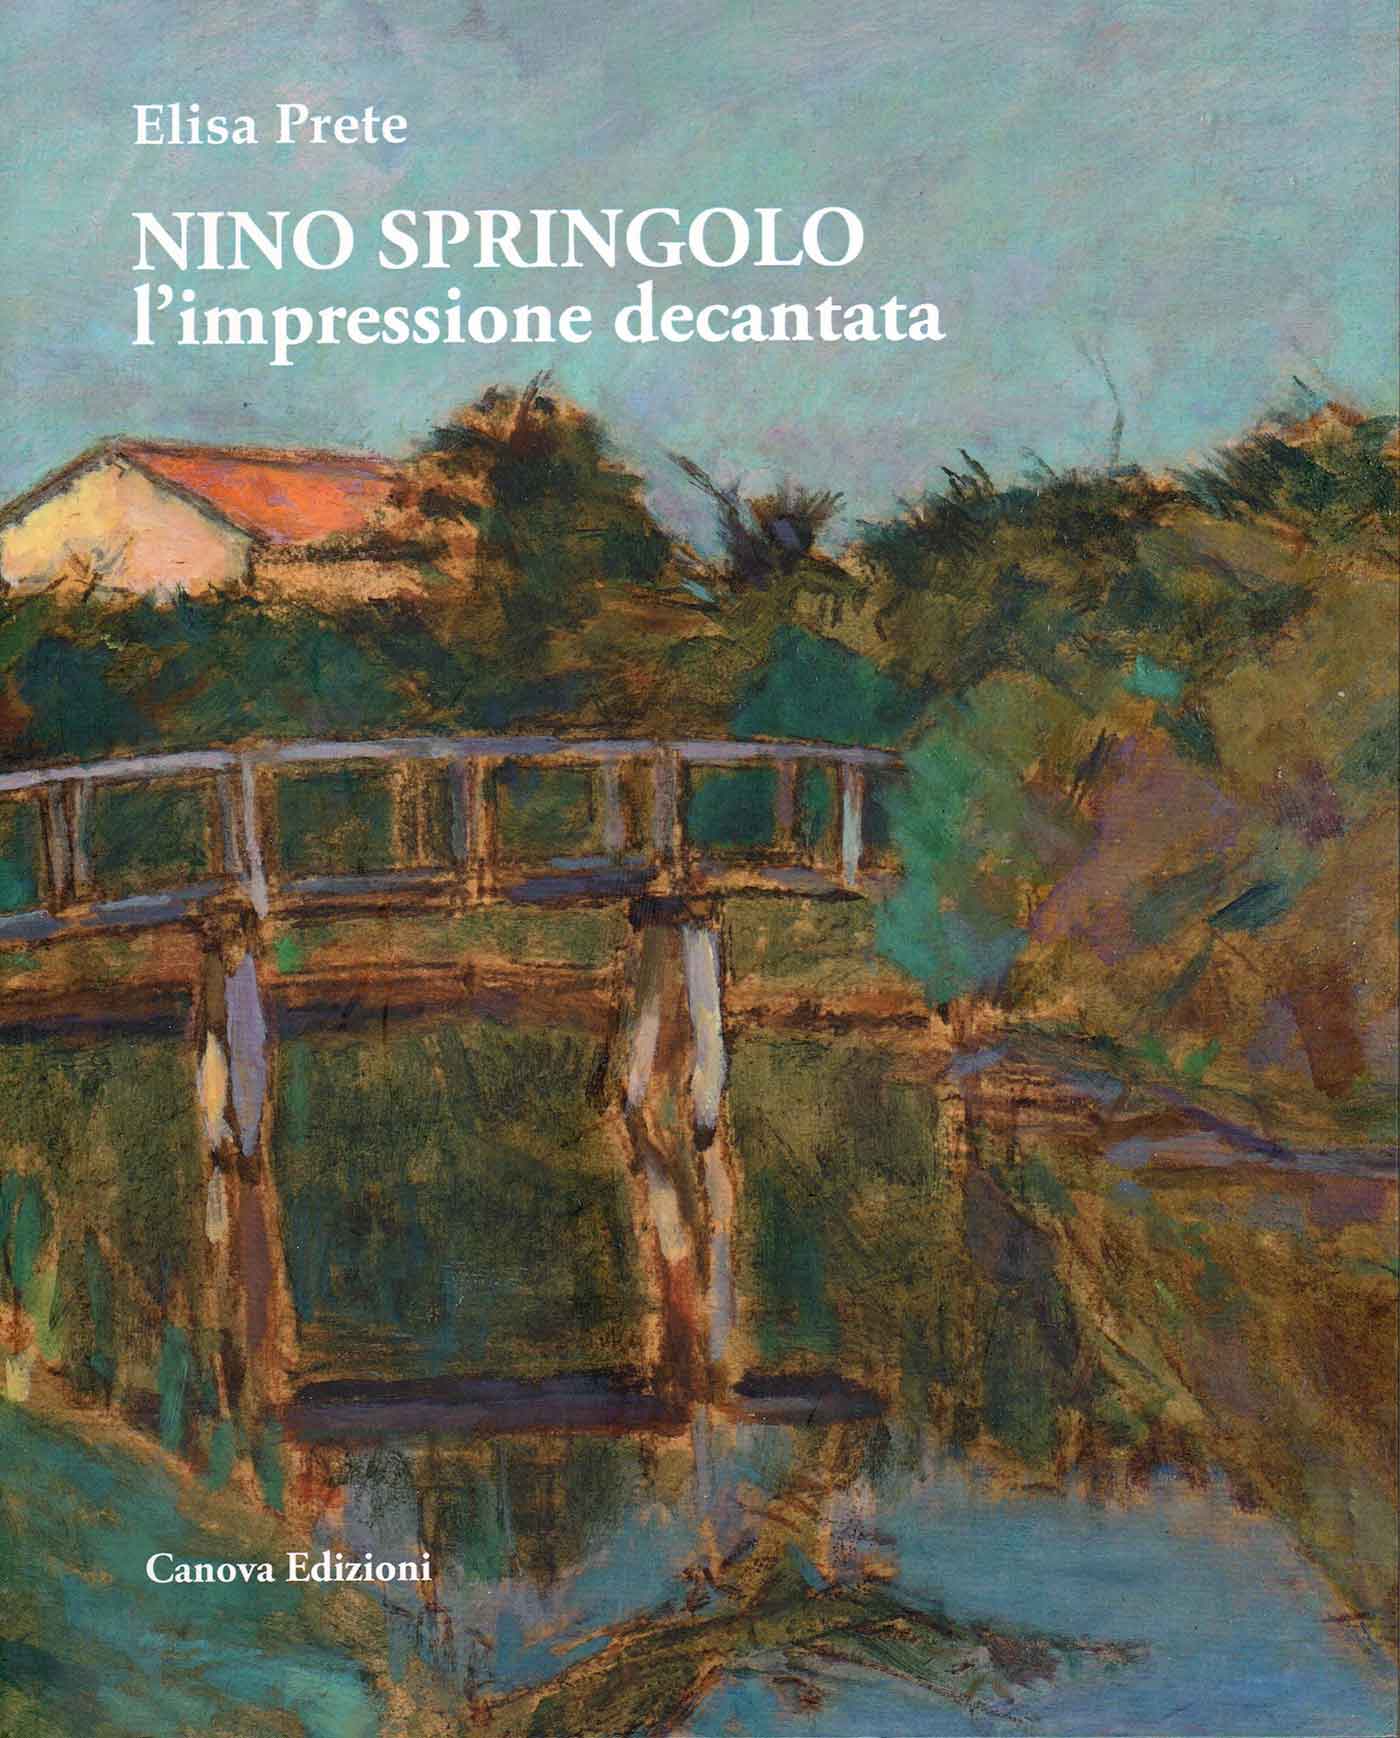 Elisa Prete - "Nino Springolo, l'impressione decantata"